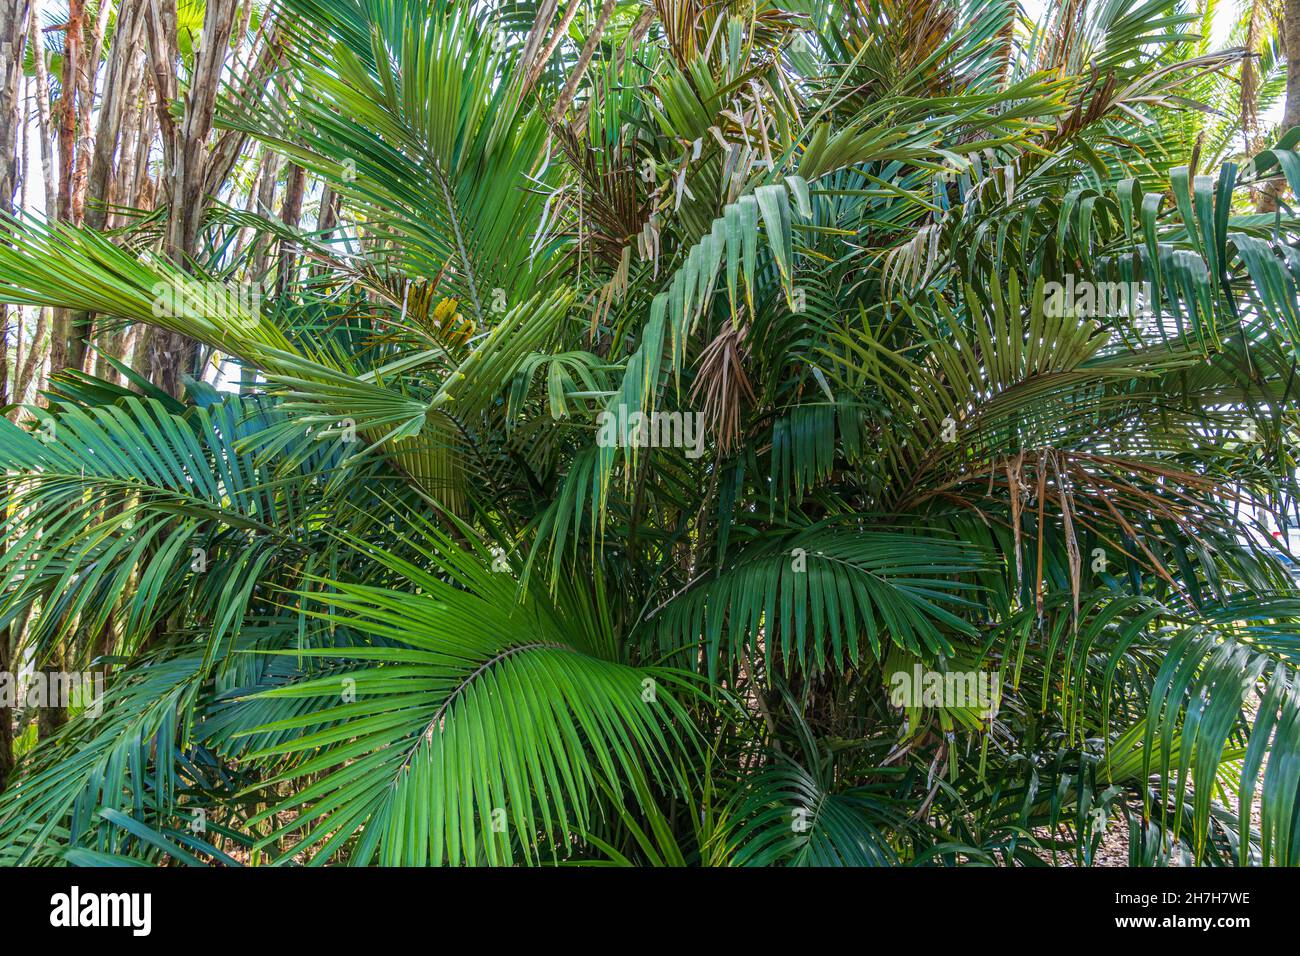 Palma di zucchero nana, nota anche come palma Formosa (Arenga engleri), originaria di Taiwan e delle isole Ryukyu del Giappone - Florida, USA Foto Stock